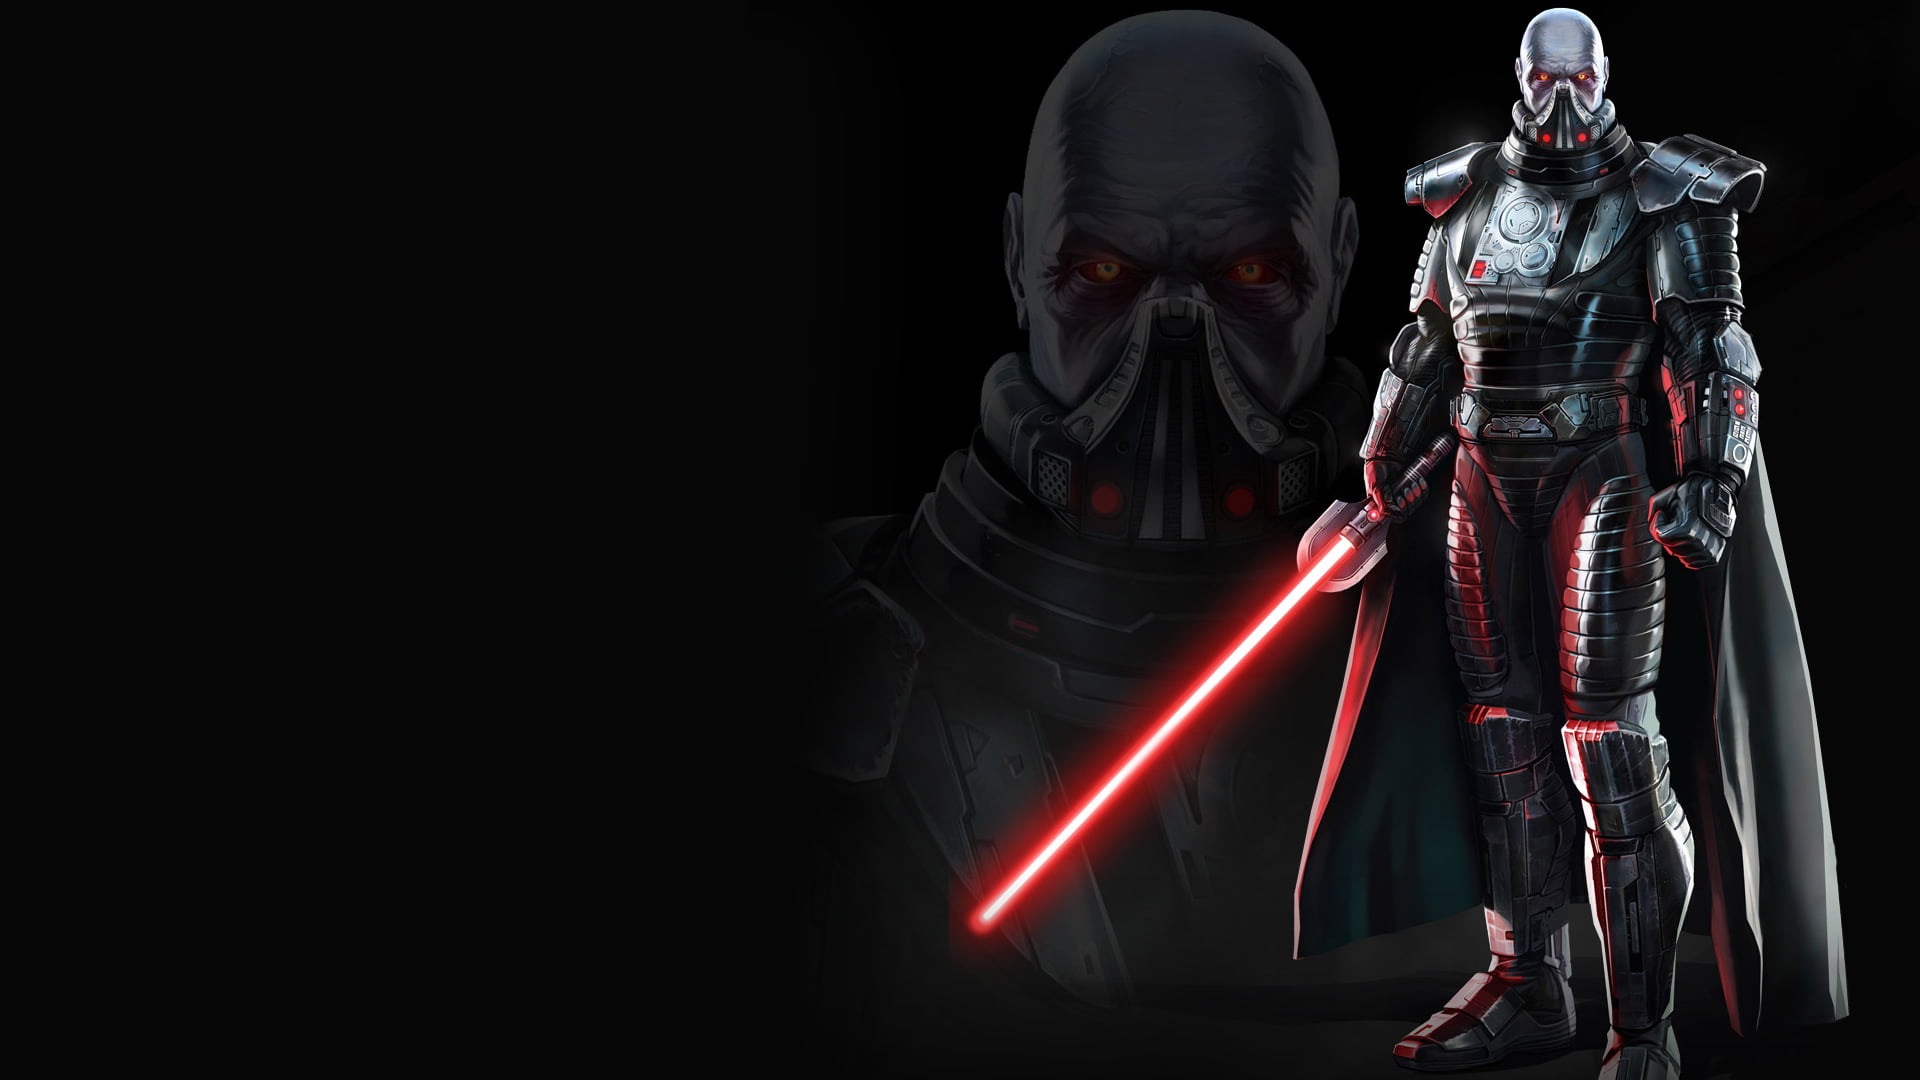 Darth Vader digital wallpaper, Star Wars, Sith, Star Wars: The Old Republic, lightsaber